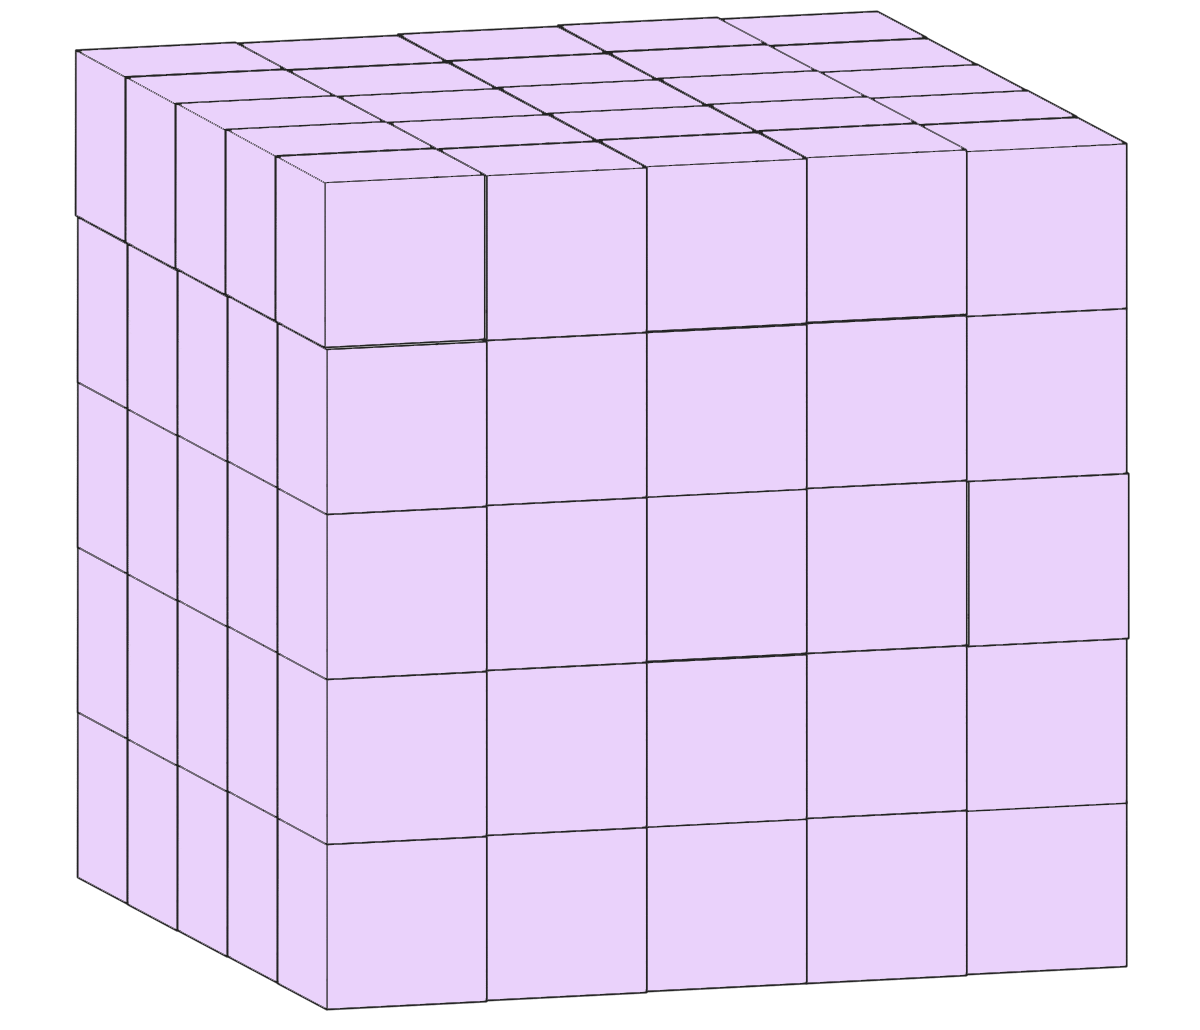 1辺が1cmの立方体を125個並べて作った1辺5cmの立方体